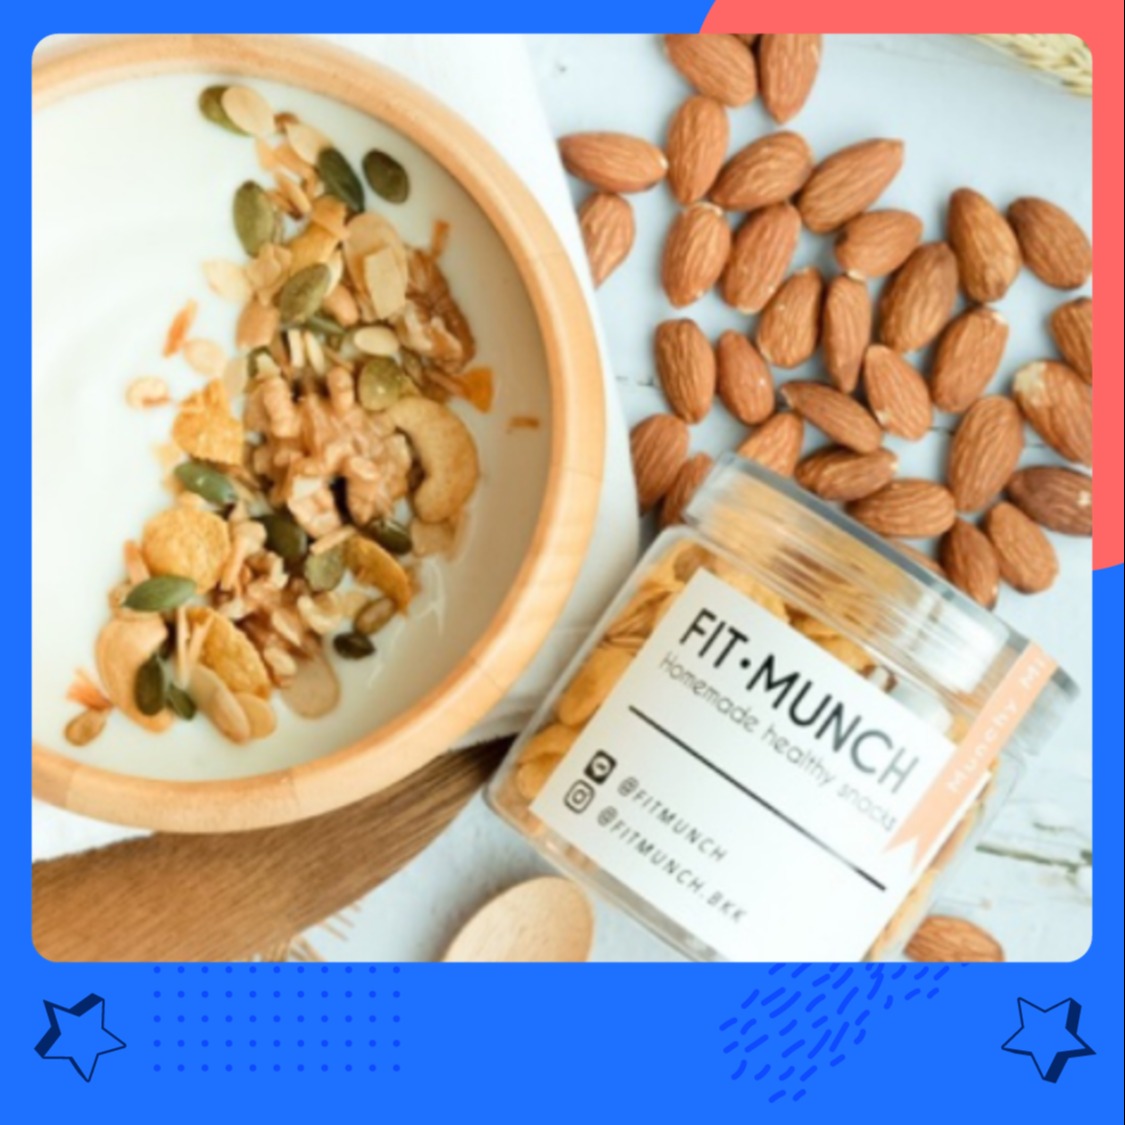 Fitmunch Munchy Mixed Nuts ถั่วและธัญพืชอบกรอบเพื่อสุขภาพ (ซีเรียล คอนเฟลค กราโนล่า อัลมอนด์อบ)